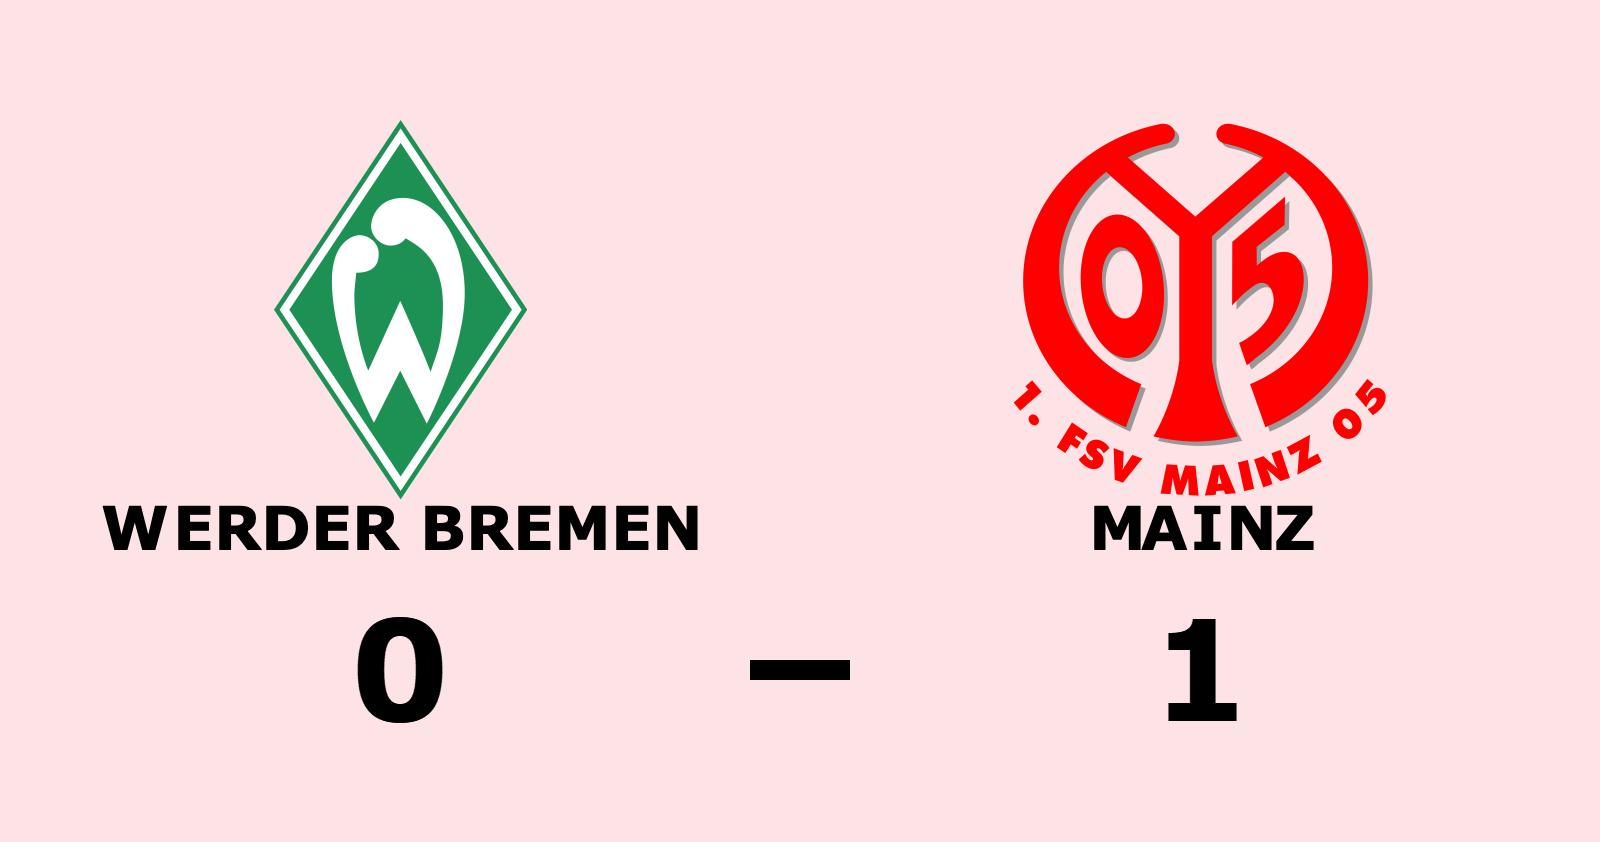 Motgångarna fortsätter - Werder Bremen förlorade på nytt